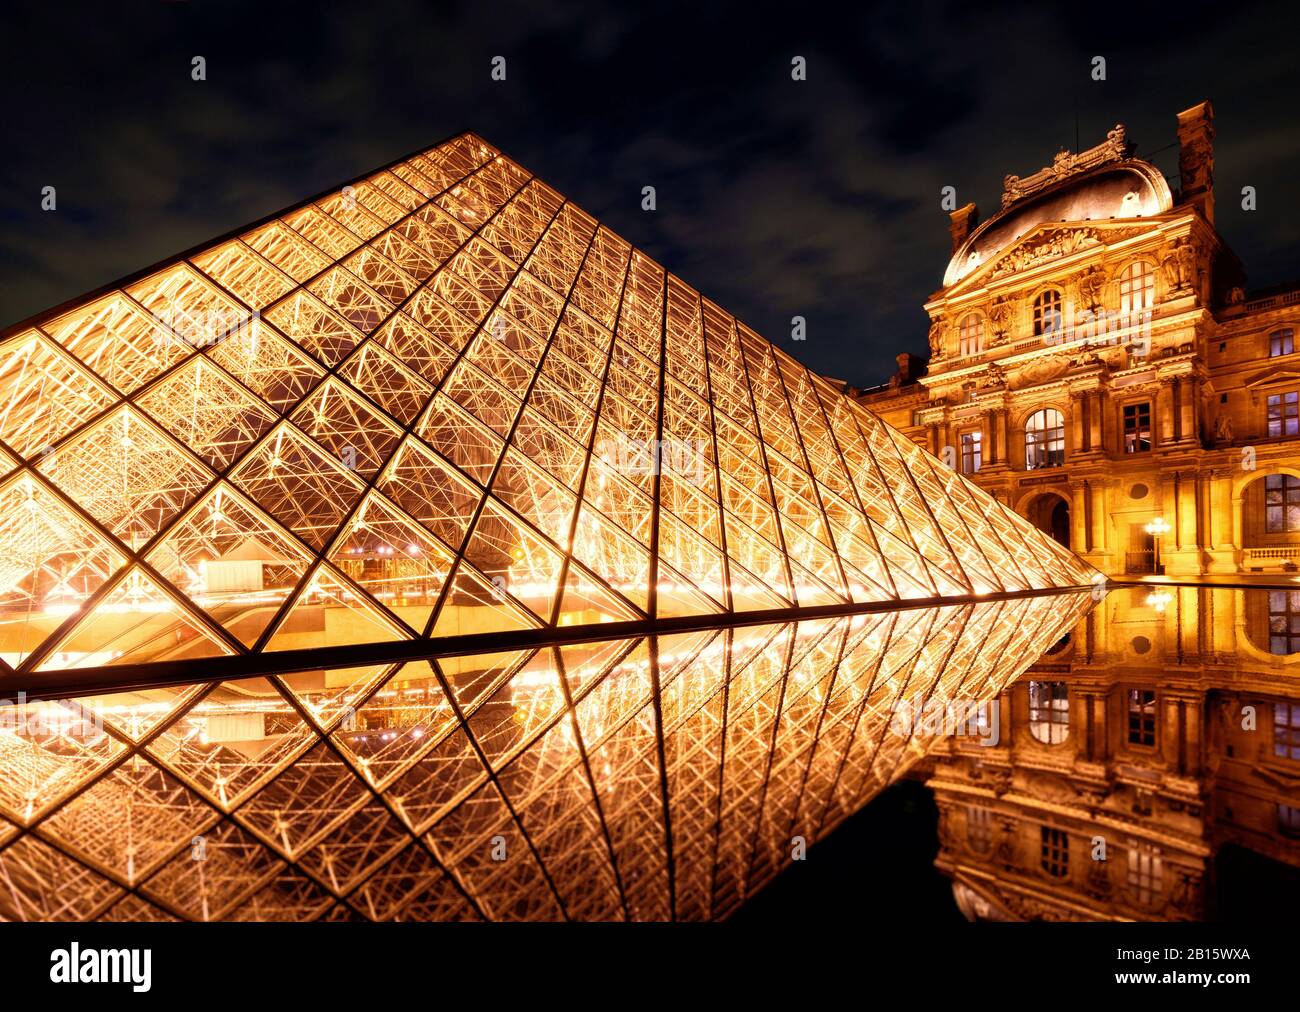 Parigi - 25 SETTEMBRE 2013: La famosa piramide di vetro al Louvre. Il Louvre è uno dei più grandi musei del mondo e uno dei maggiori turisti Foto Stock